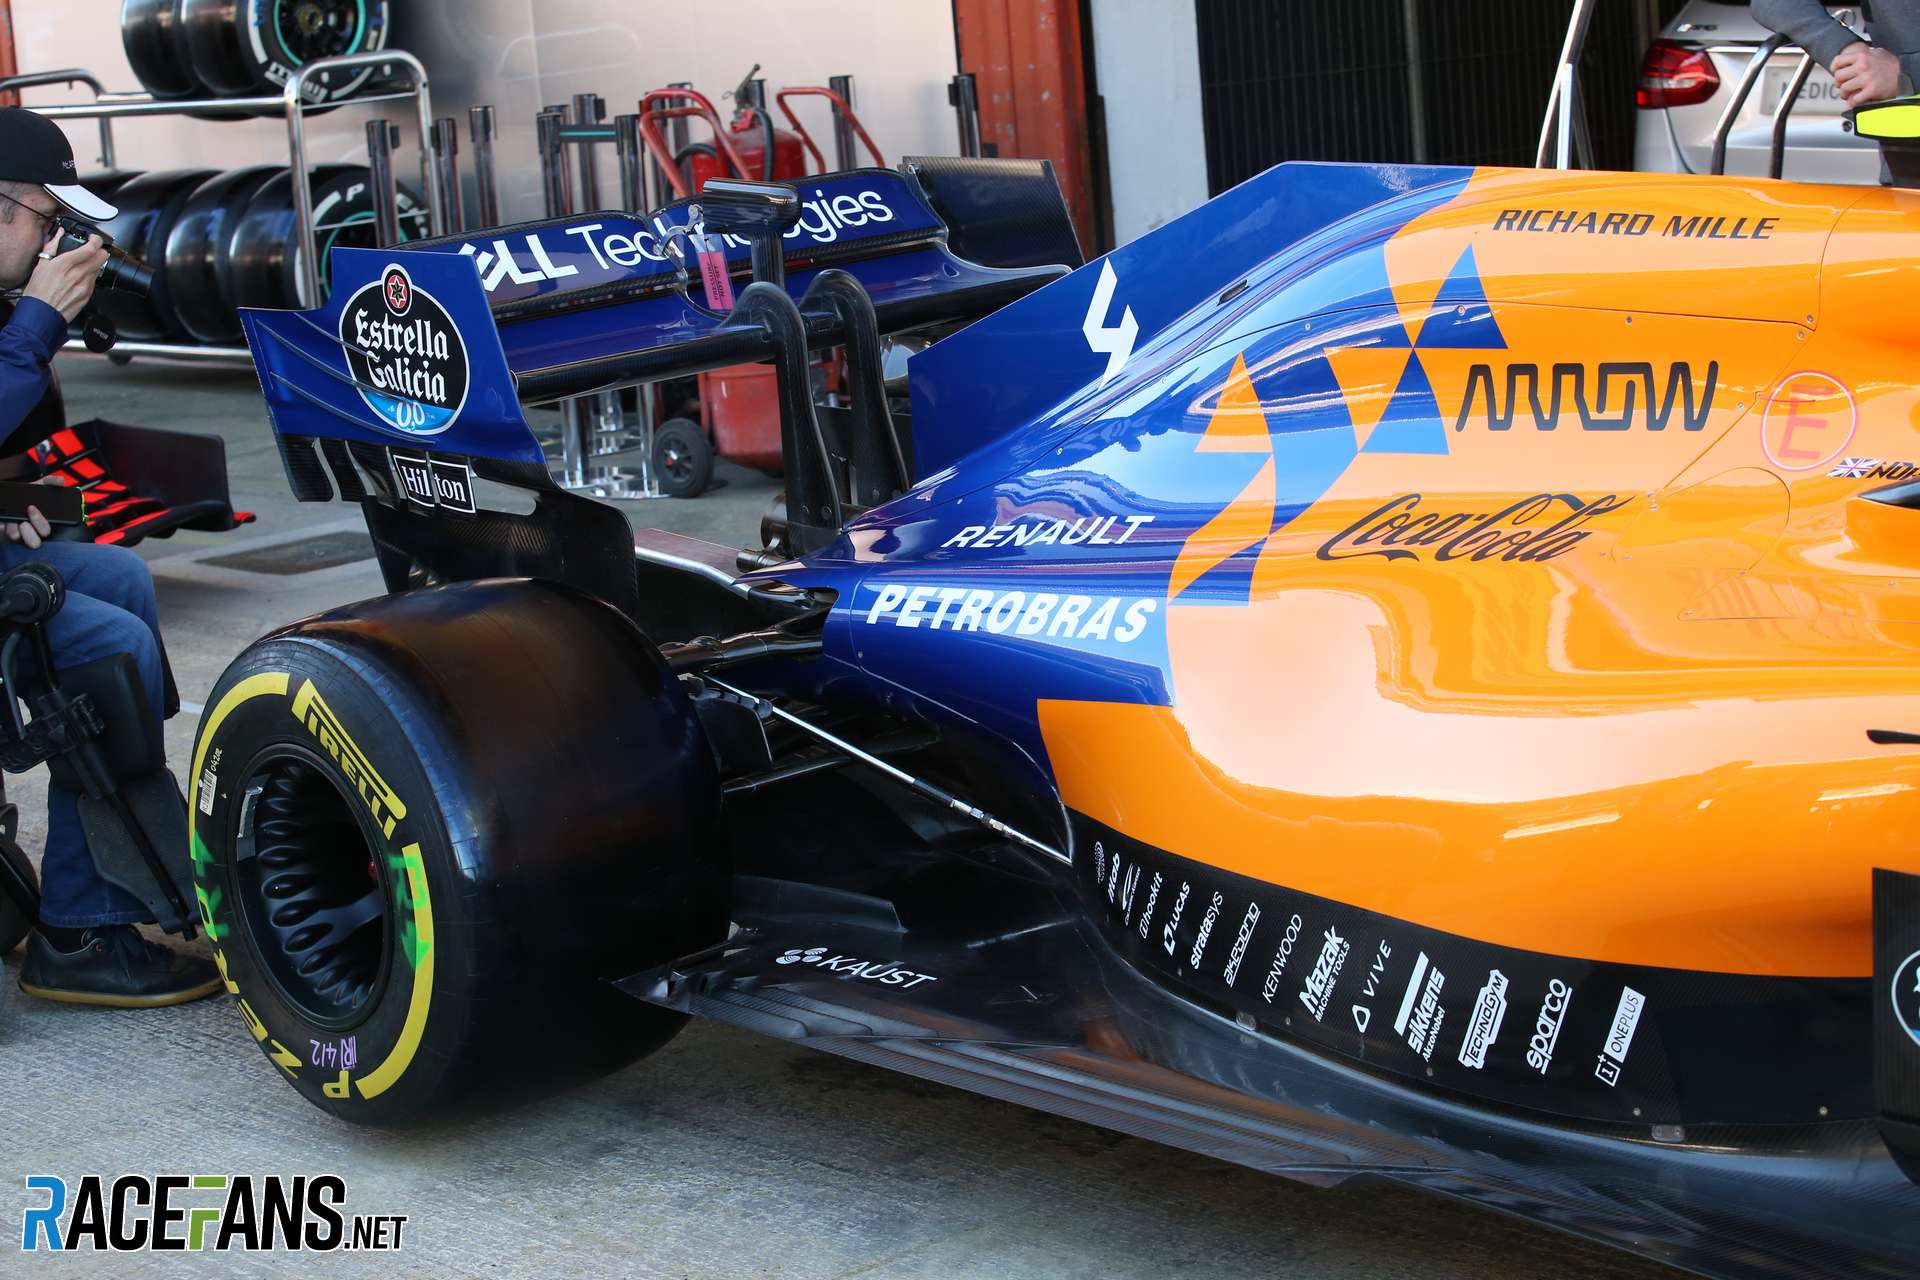 McLaren engine cover, Circuit de Catalunya, 2019